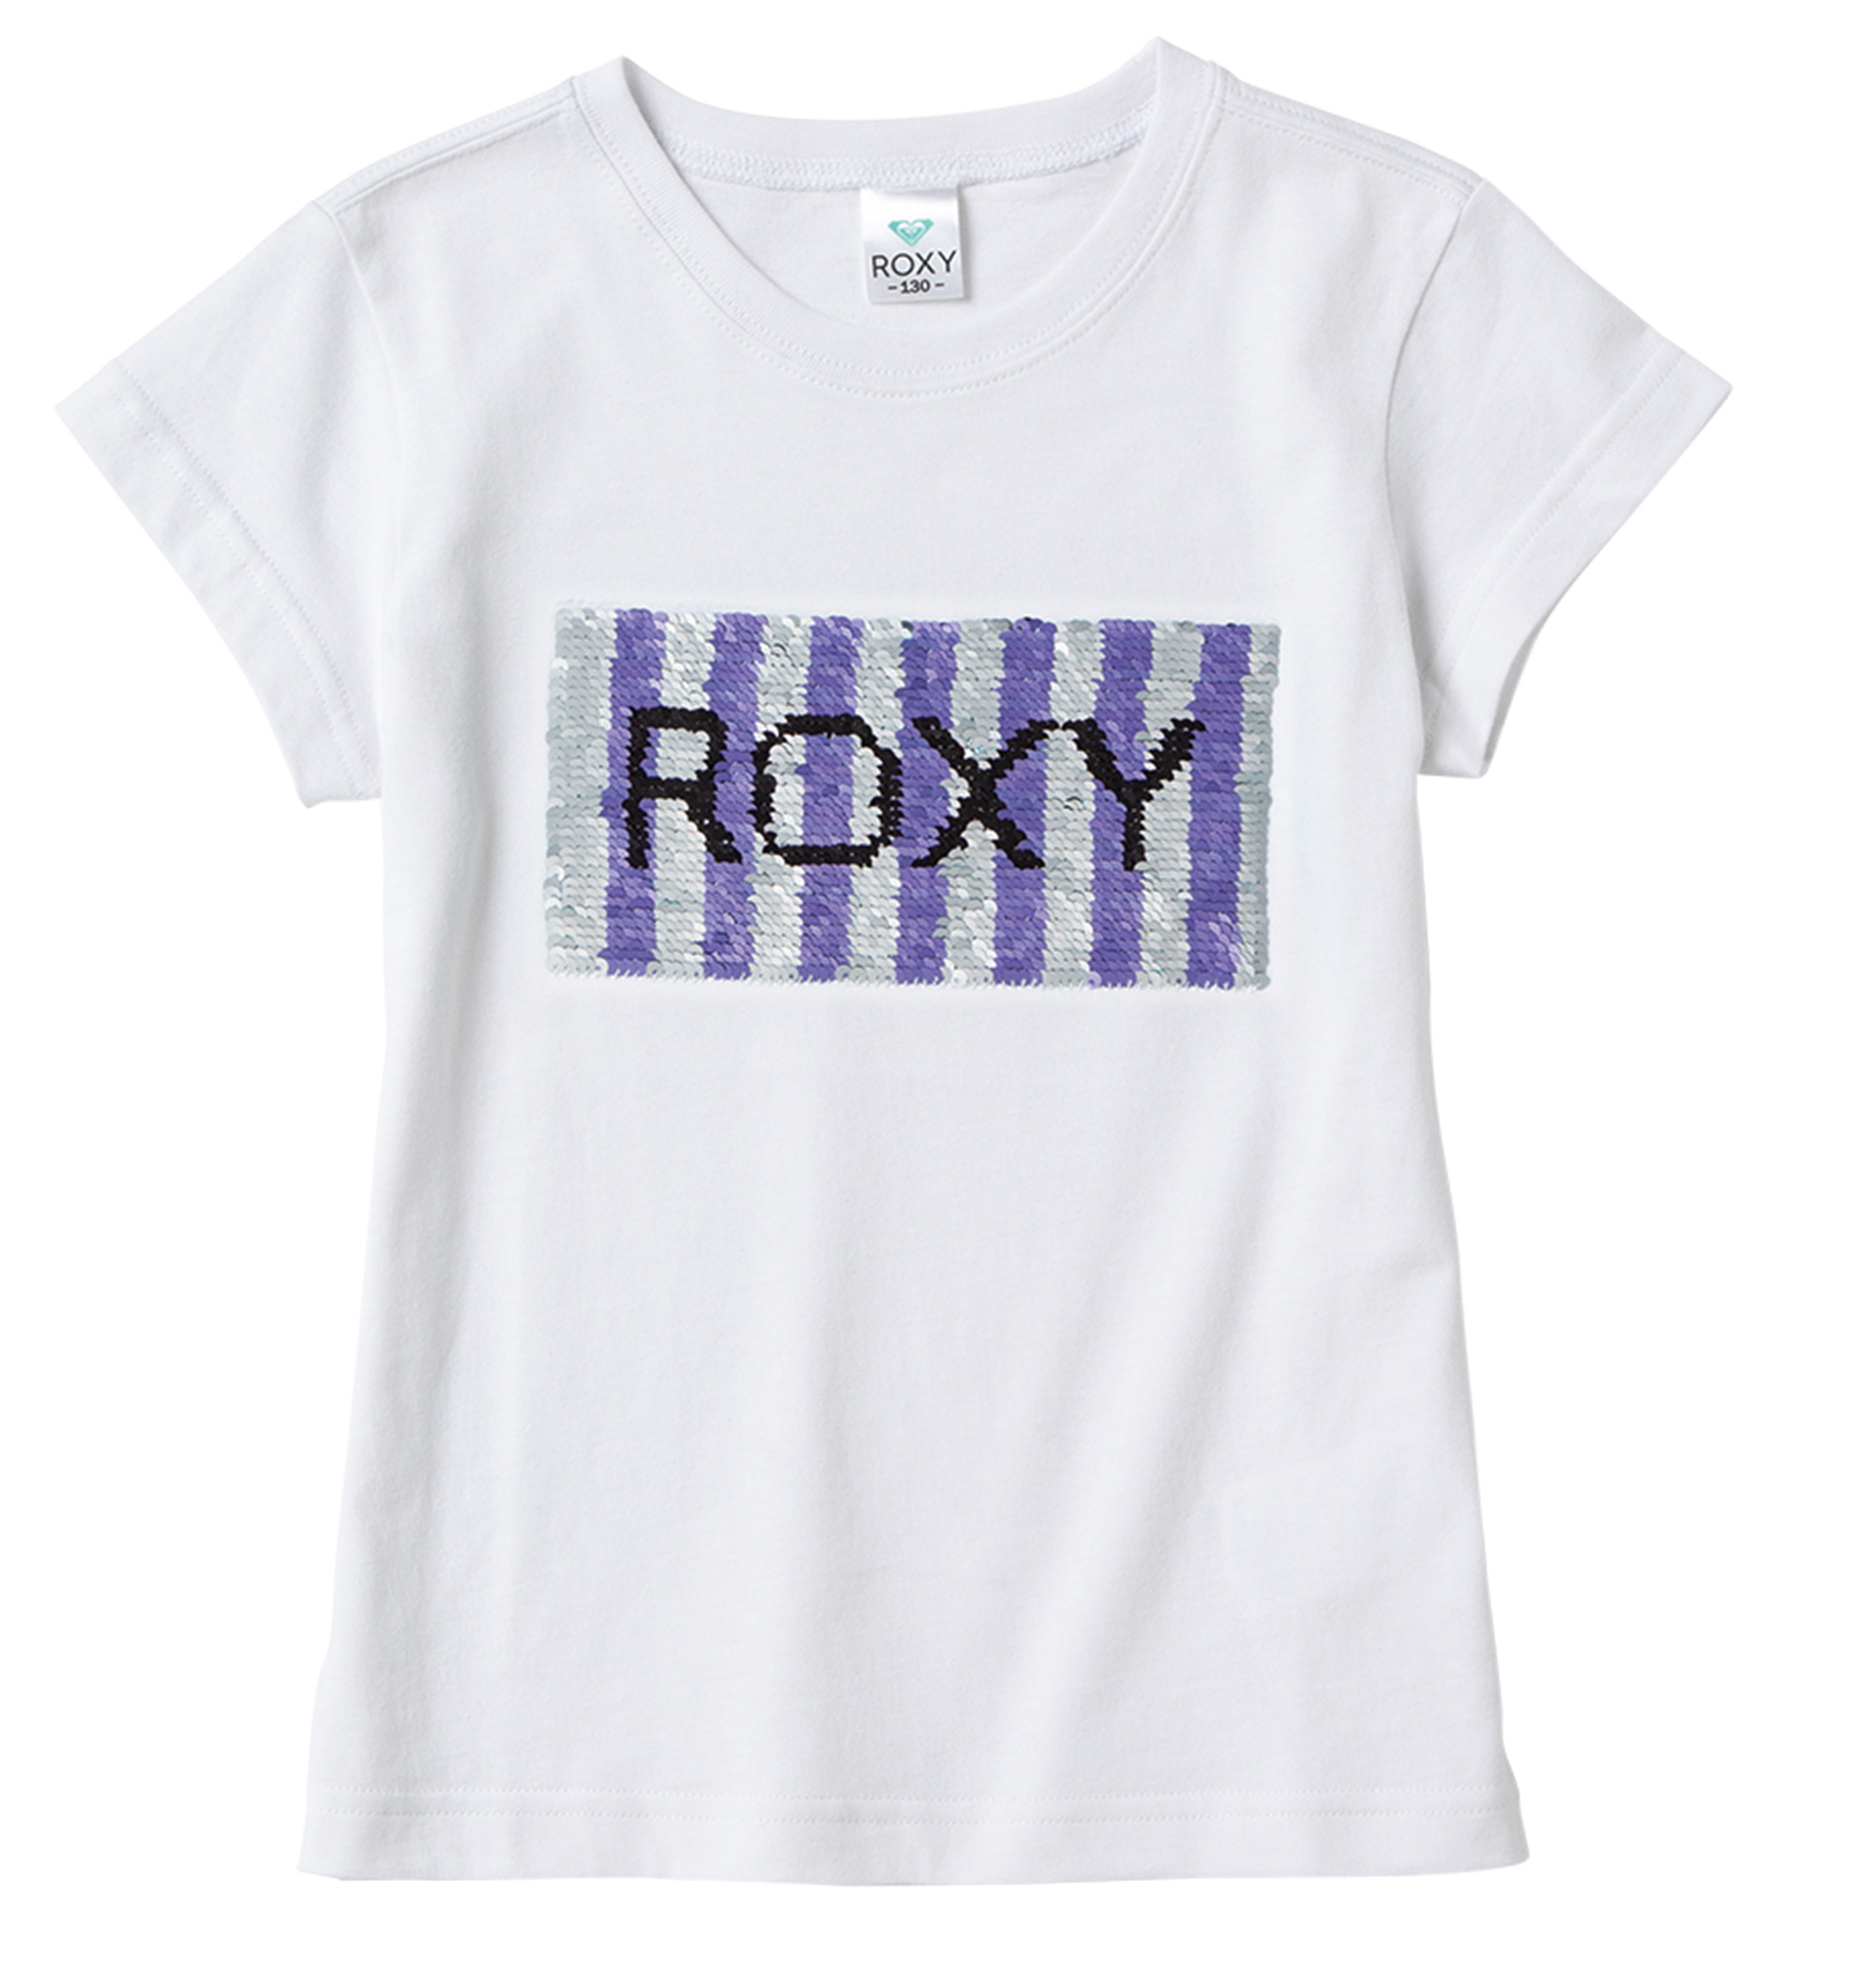 30%OFF！MINI STRIPE ROXY キャッチーなスパンコールのブランドロゴが個性的なTシャツ